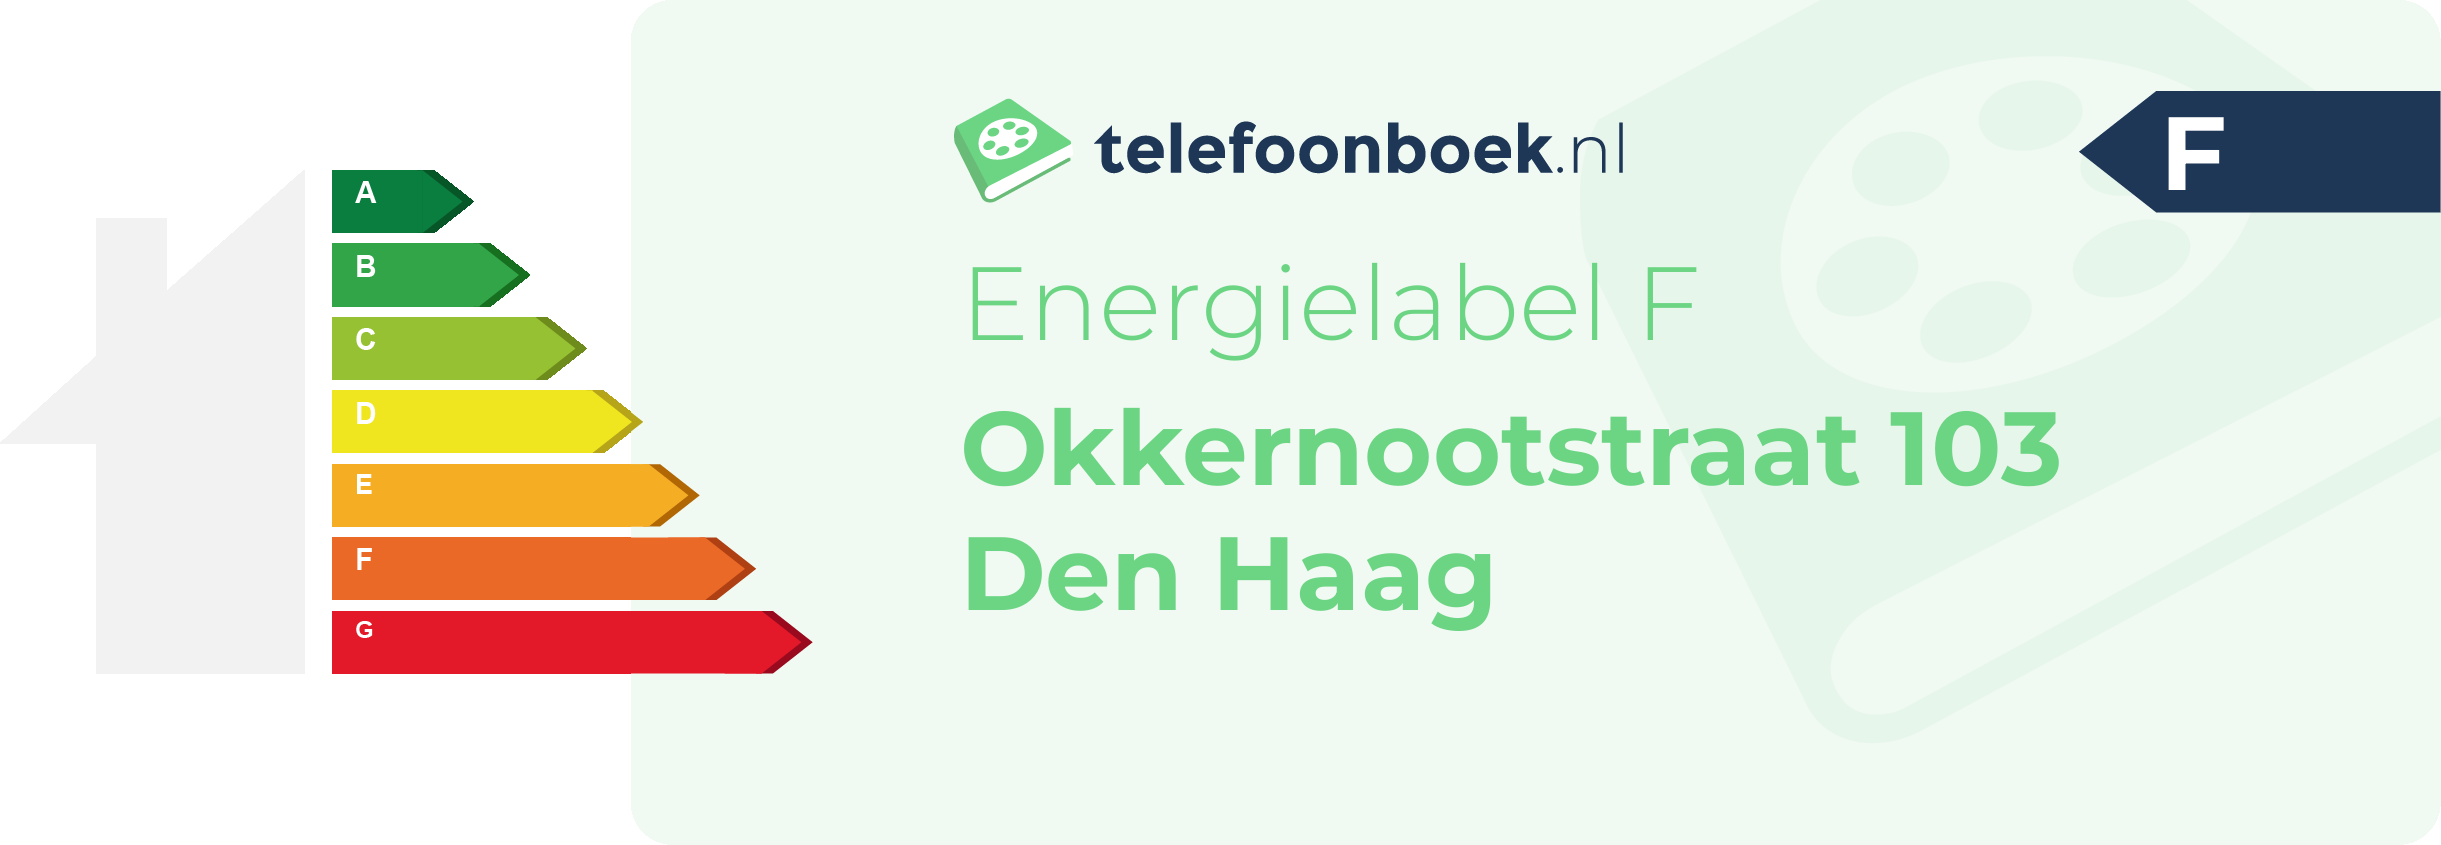 Energielabel Okkernootstraat 103 Den Haag